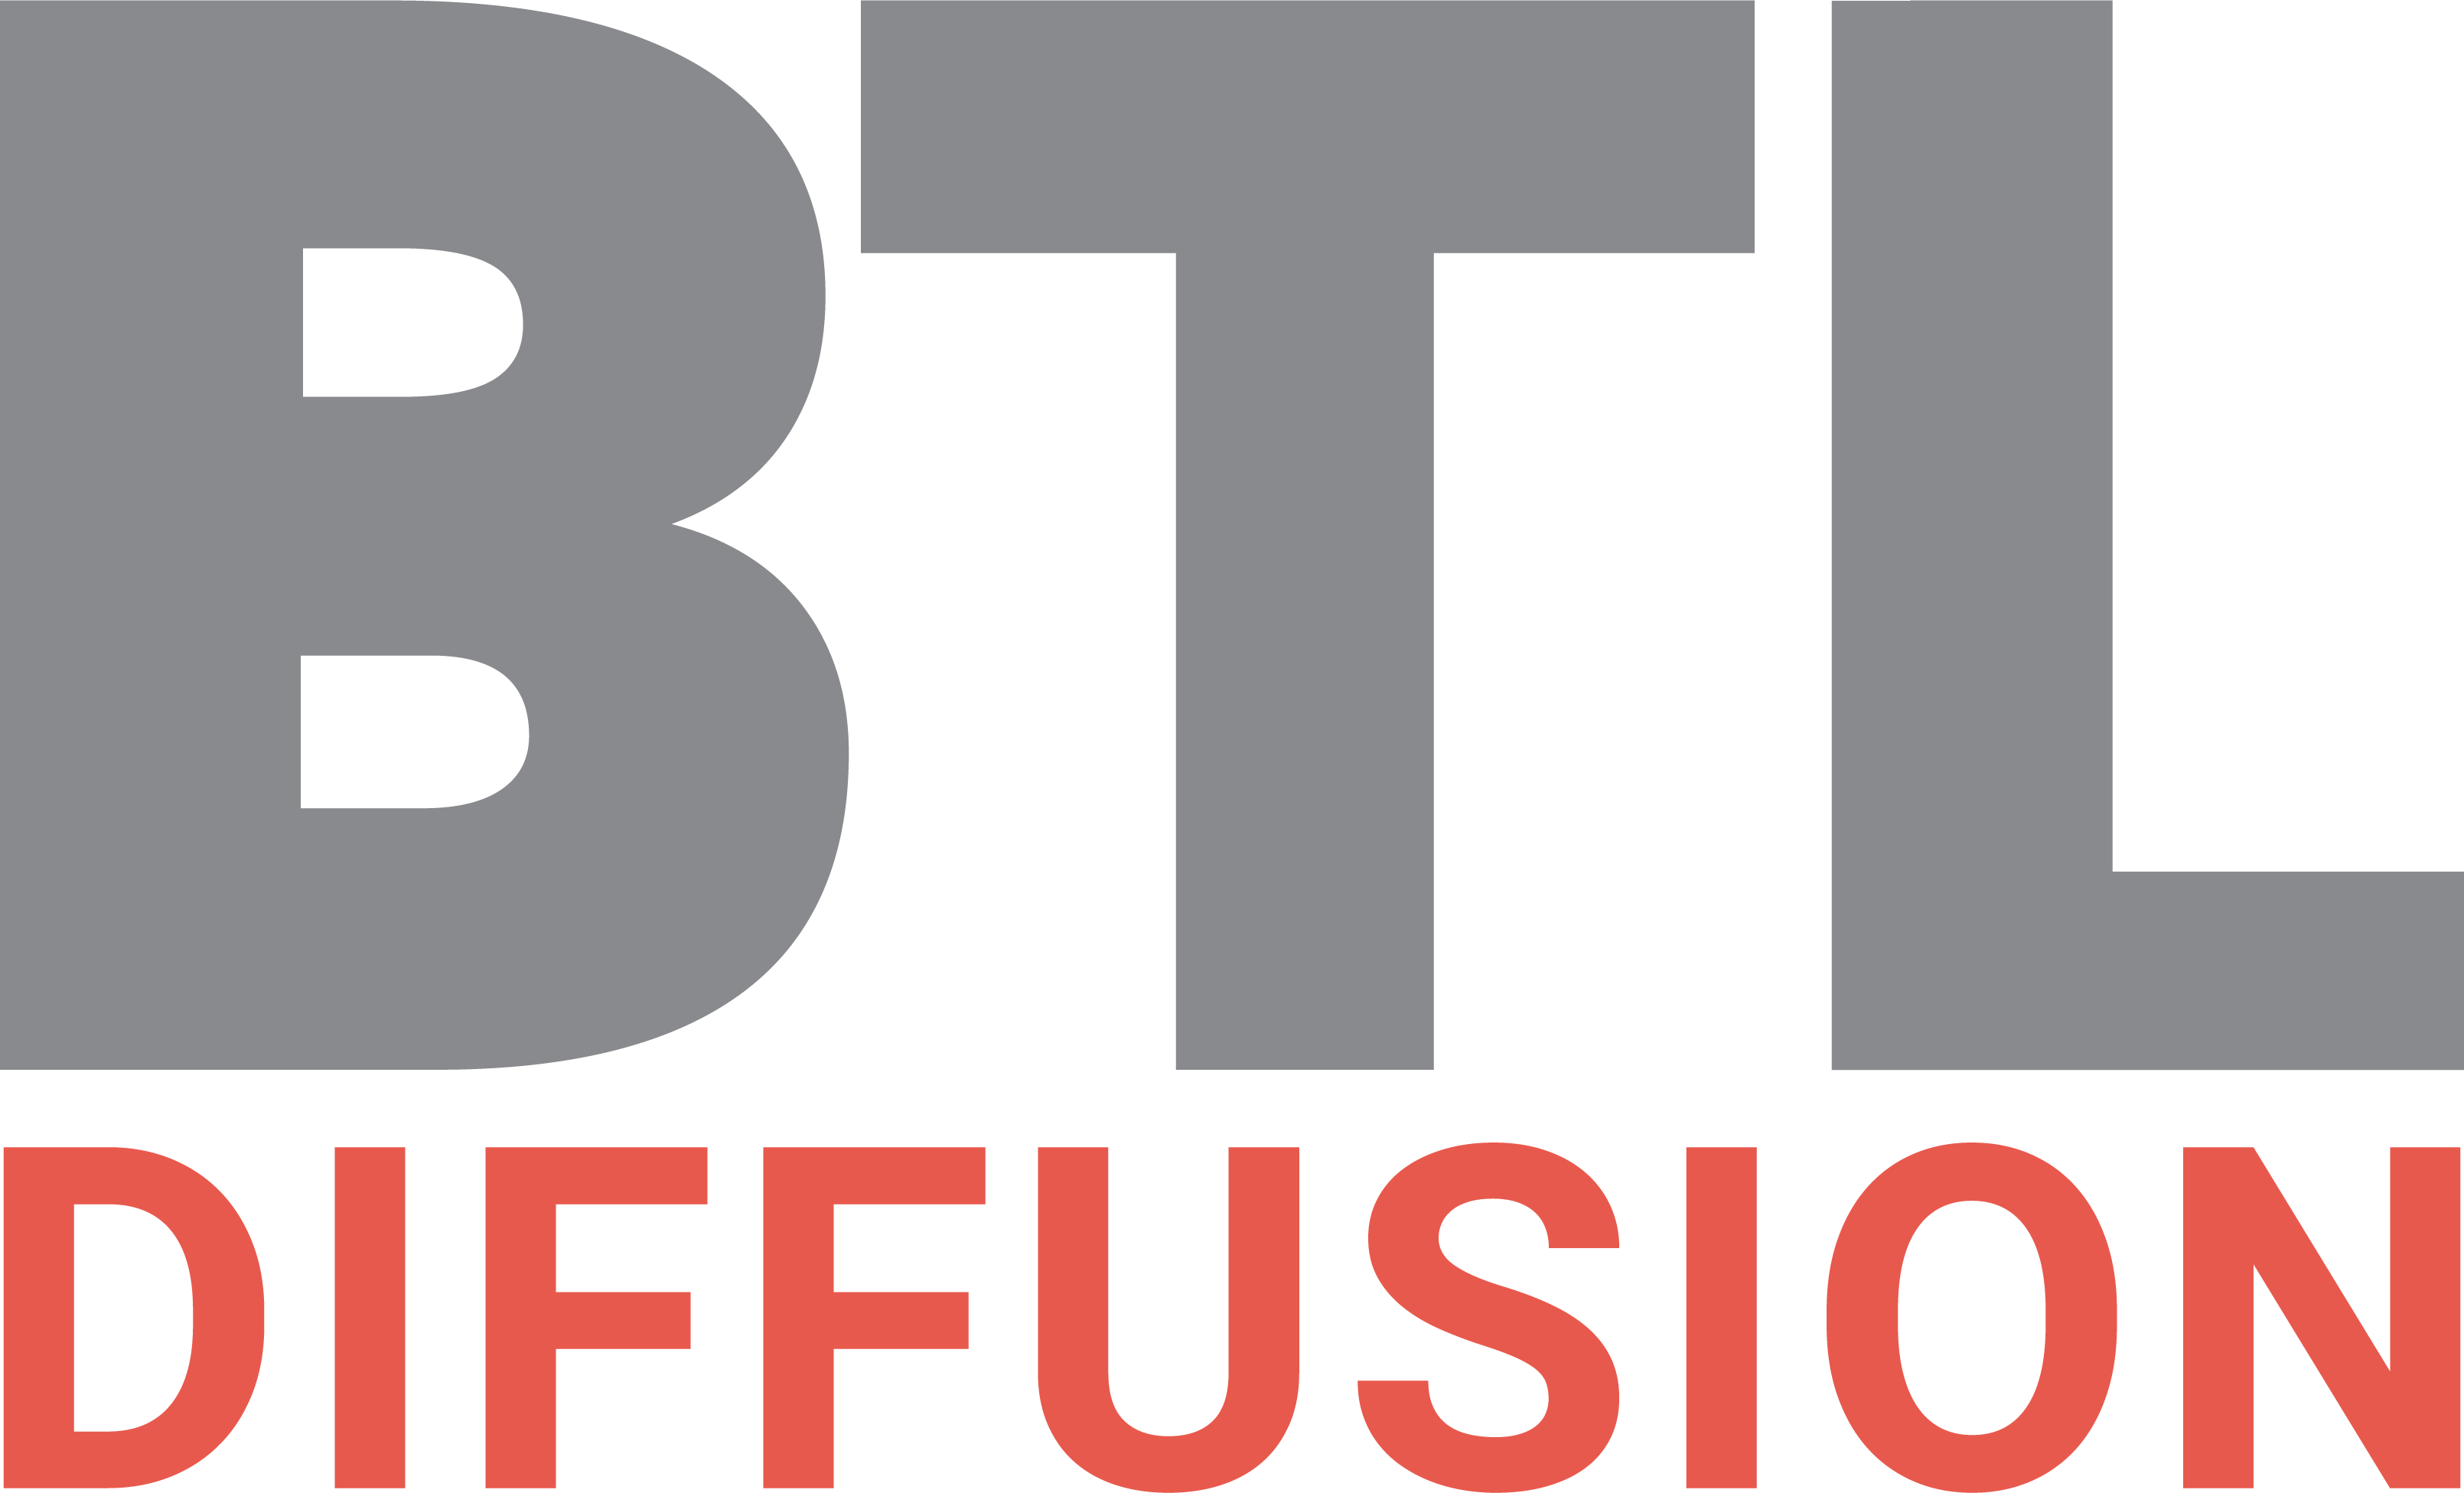 BTL Diffusion UK Ltd